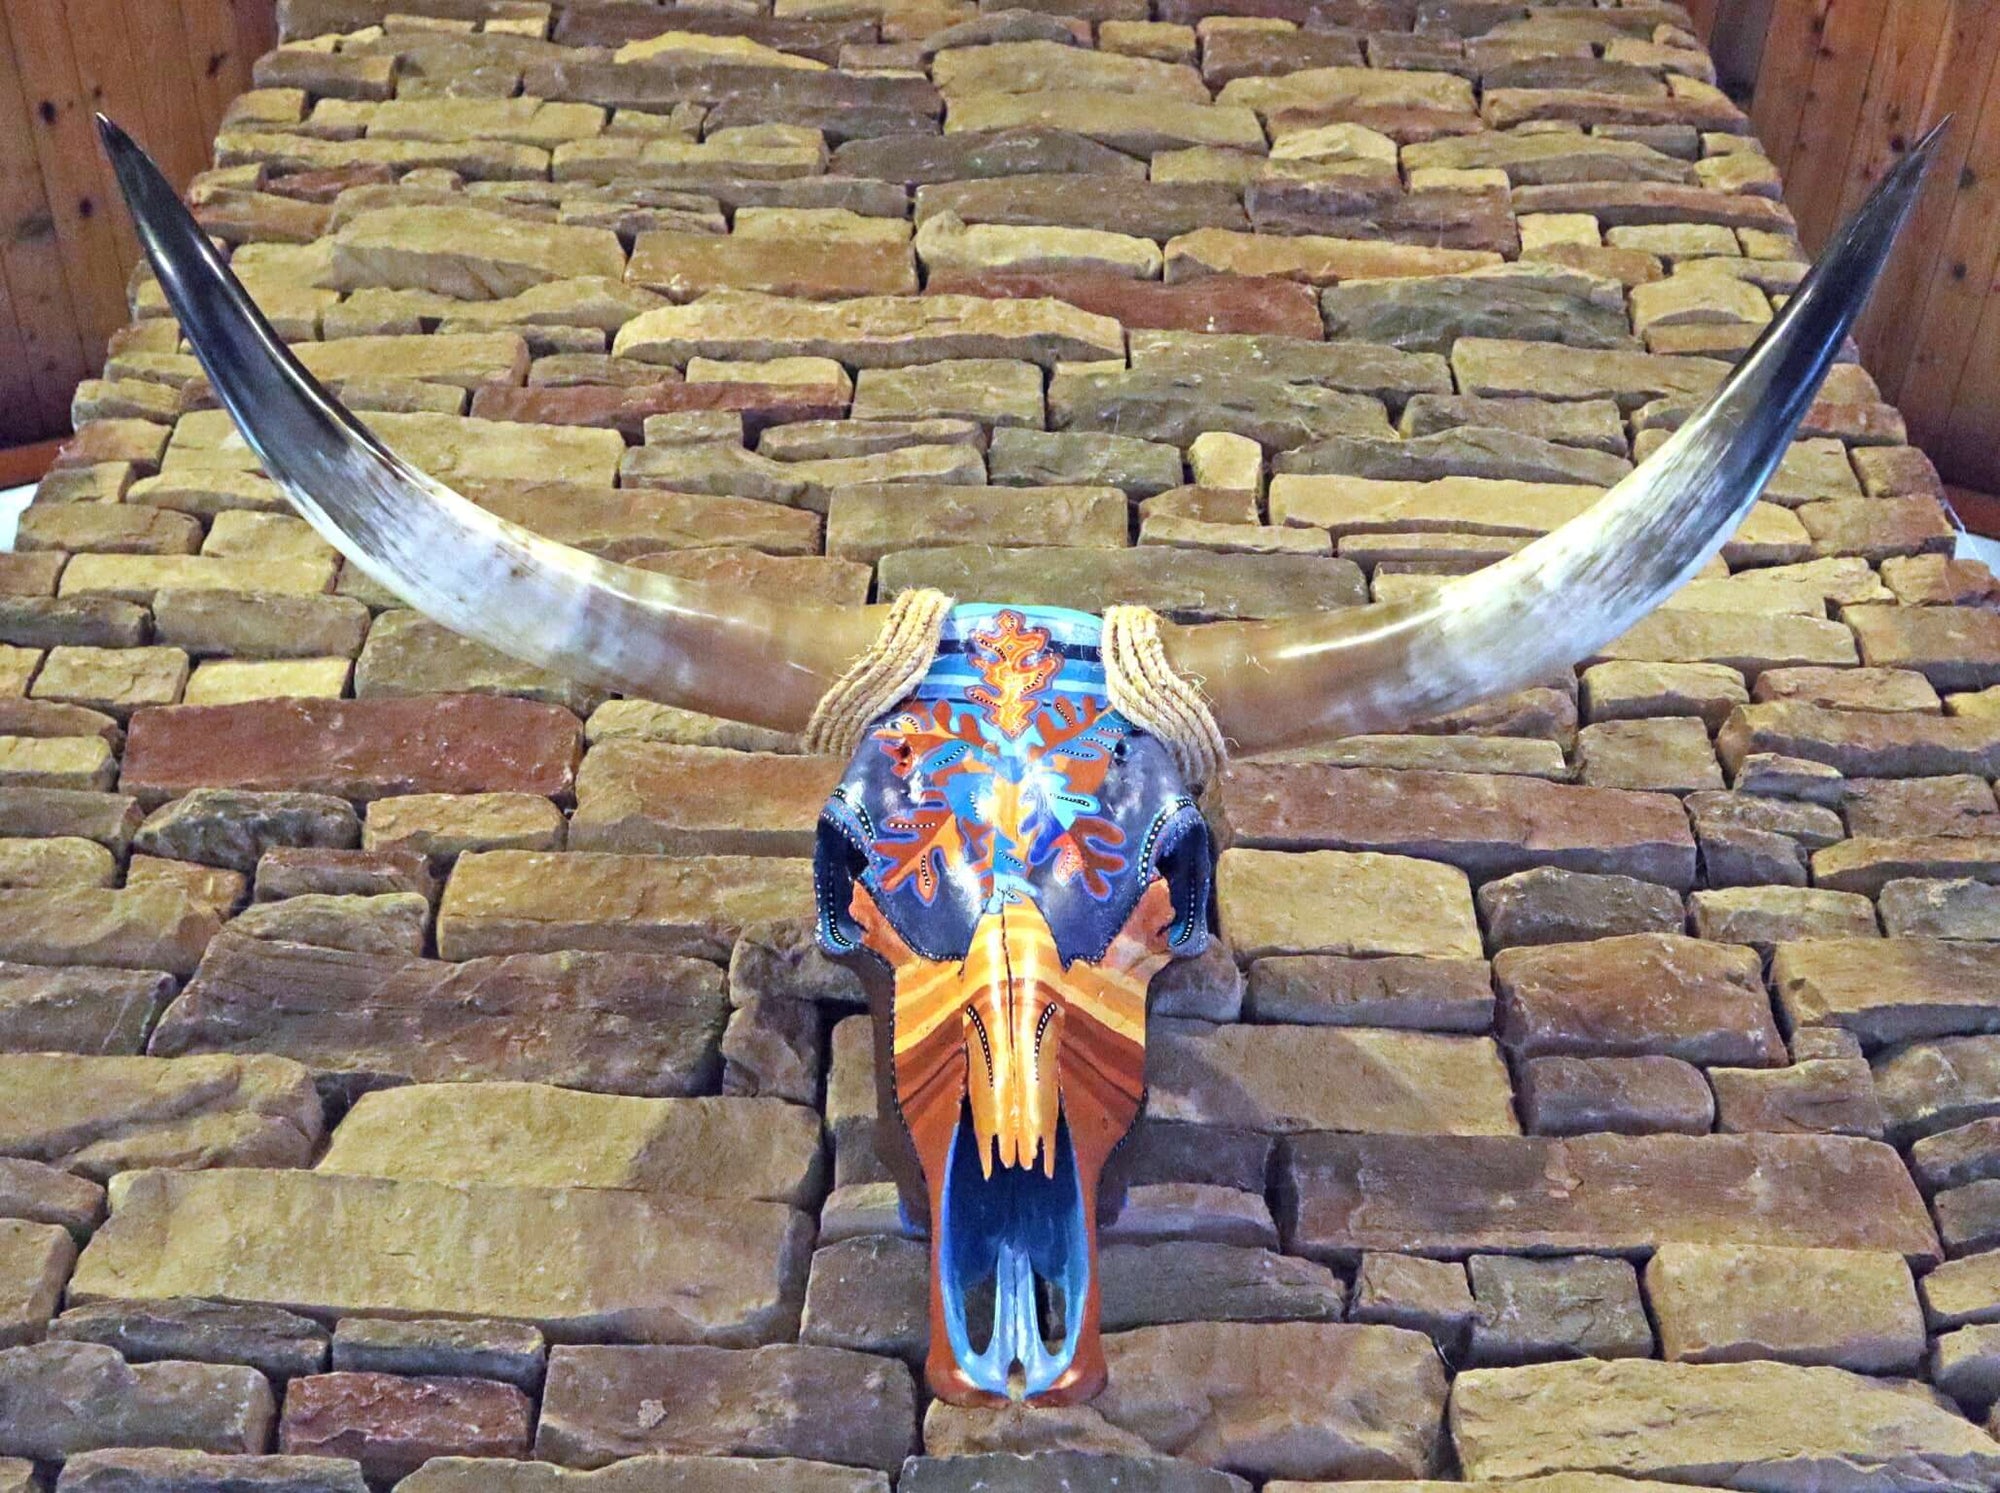 Hand Painted Steer skull. Video.